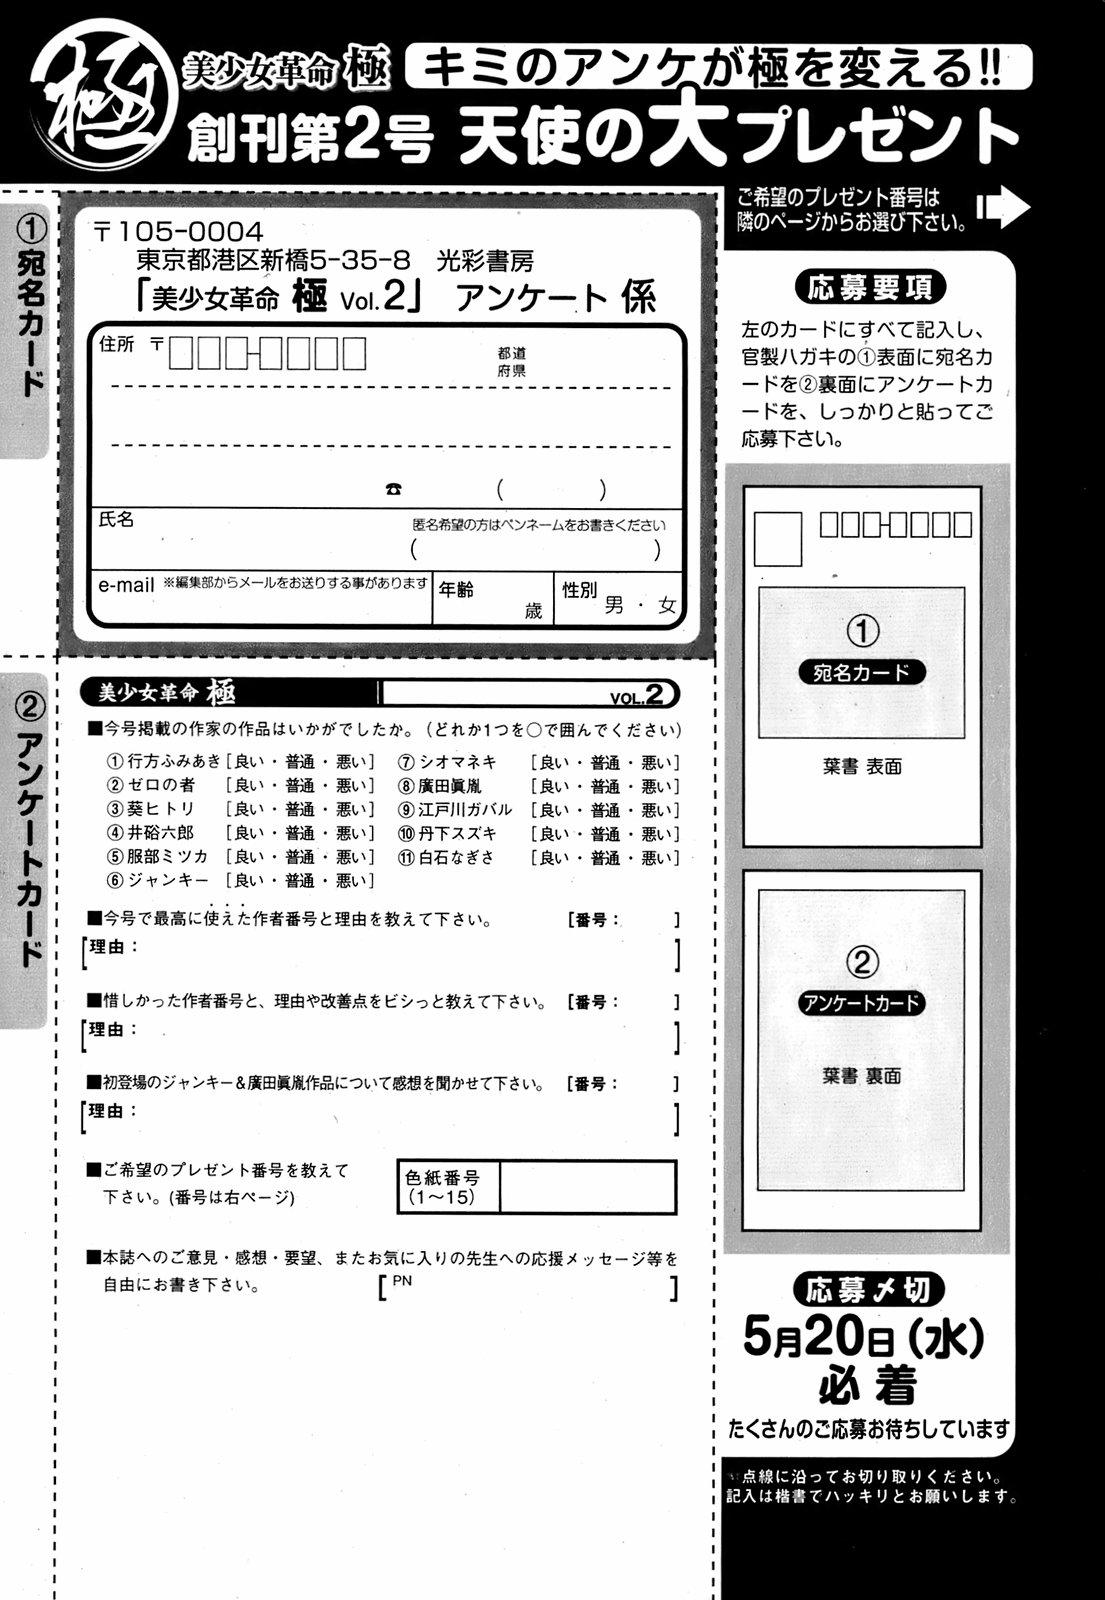 Bishoujo Kakumei KIWAME 2009-06 Vol. 2 209